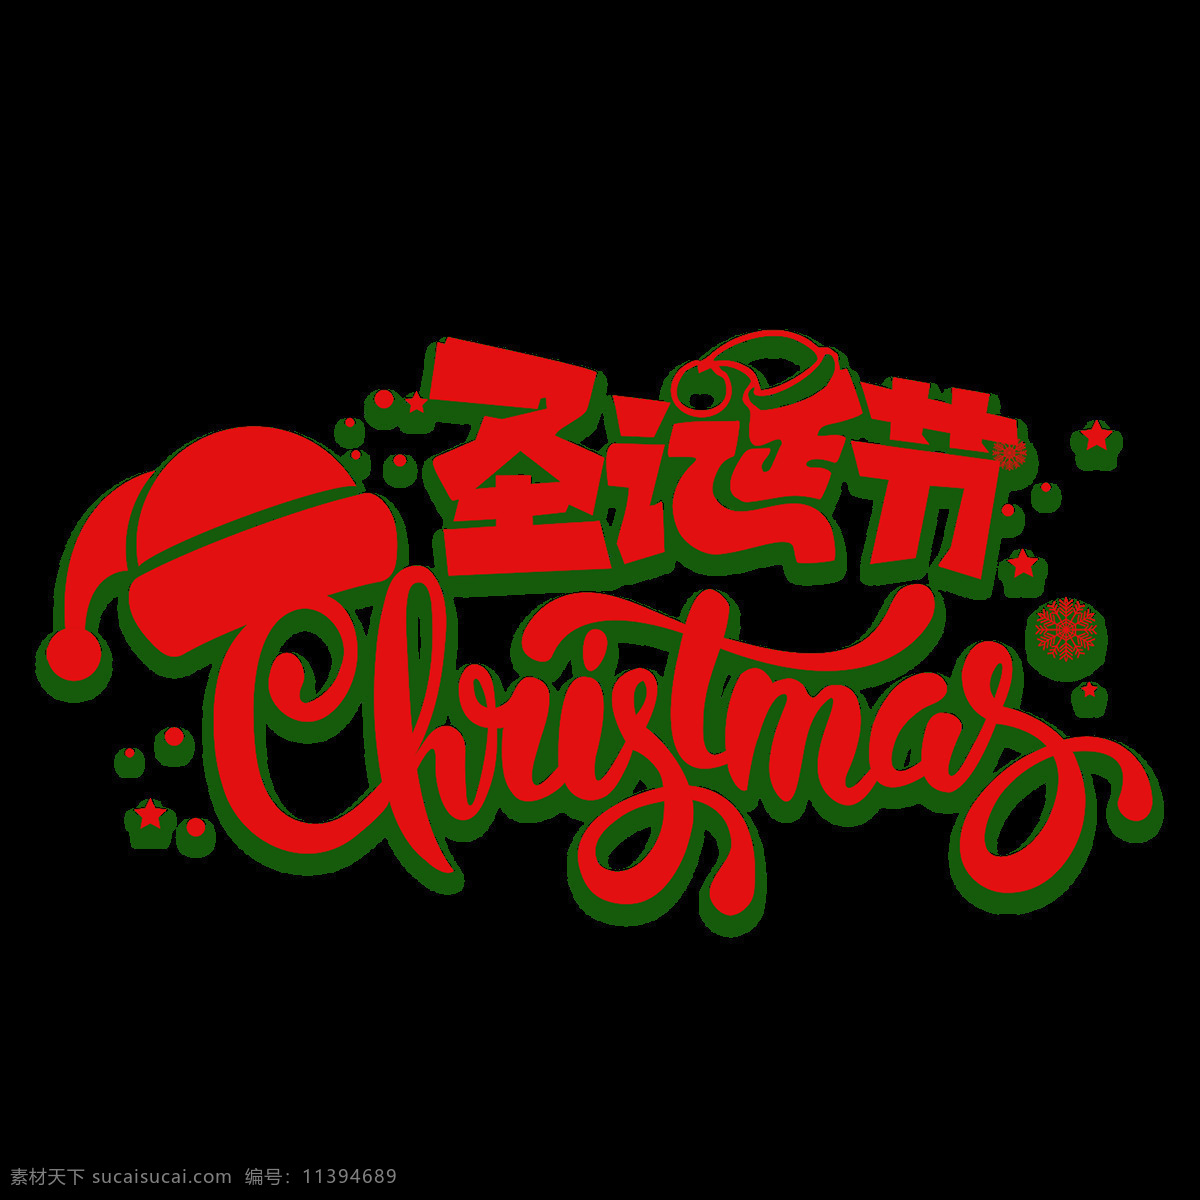 红色 圣诞节 字体 元素 彩色字体 创意字体素材 红色字体 节日字体 卡通元素 圣诞png 圣诞节快乐 圣诞透明元素 圣诞主题 圣诞字体下载 英文元素 装饰图案